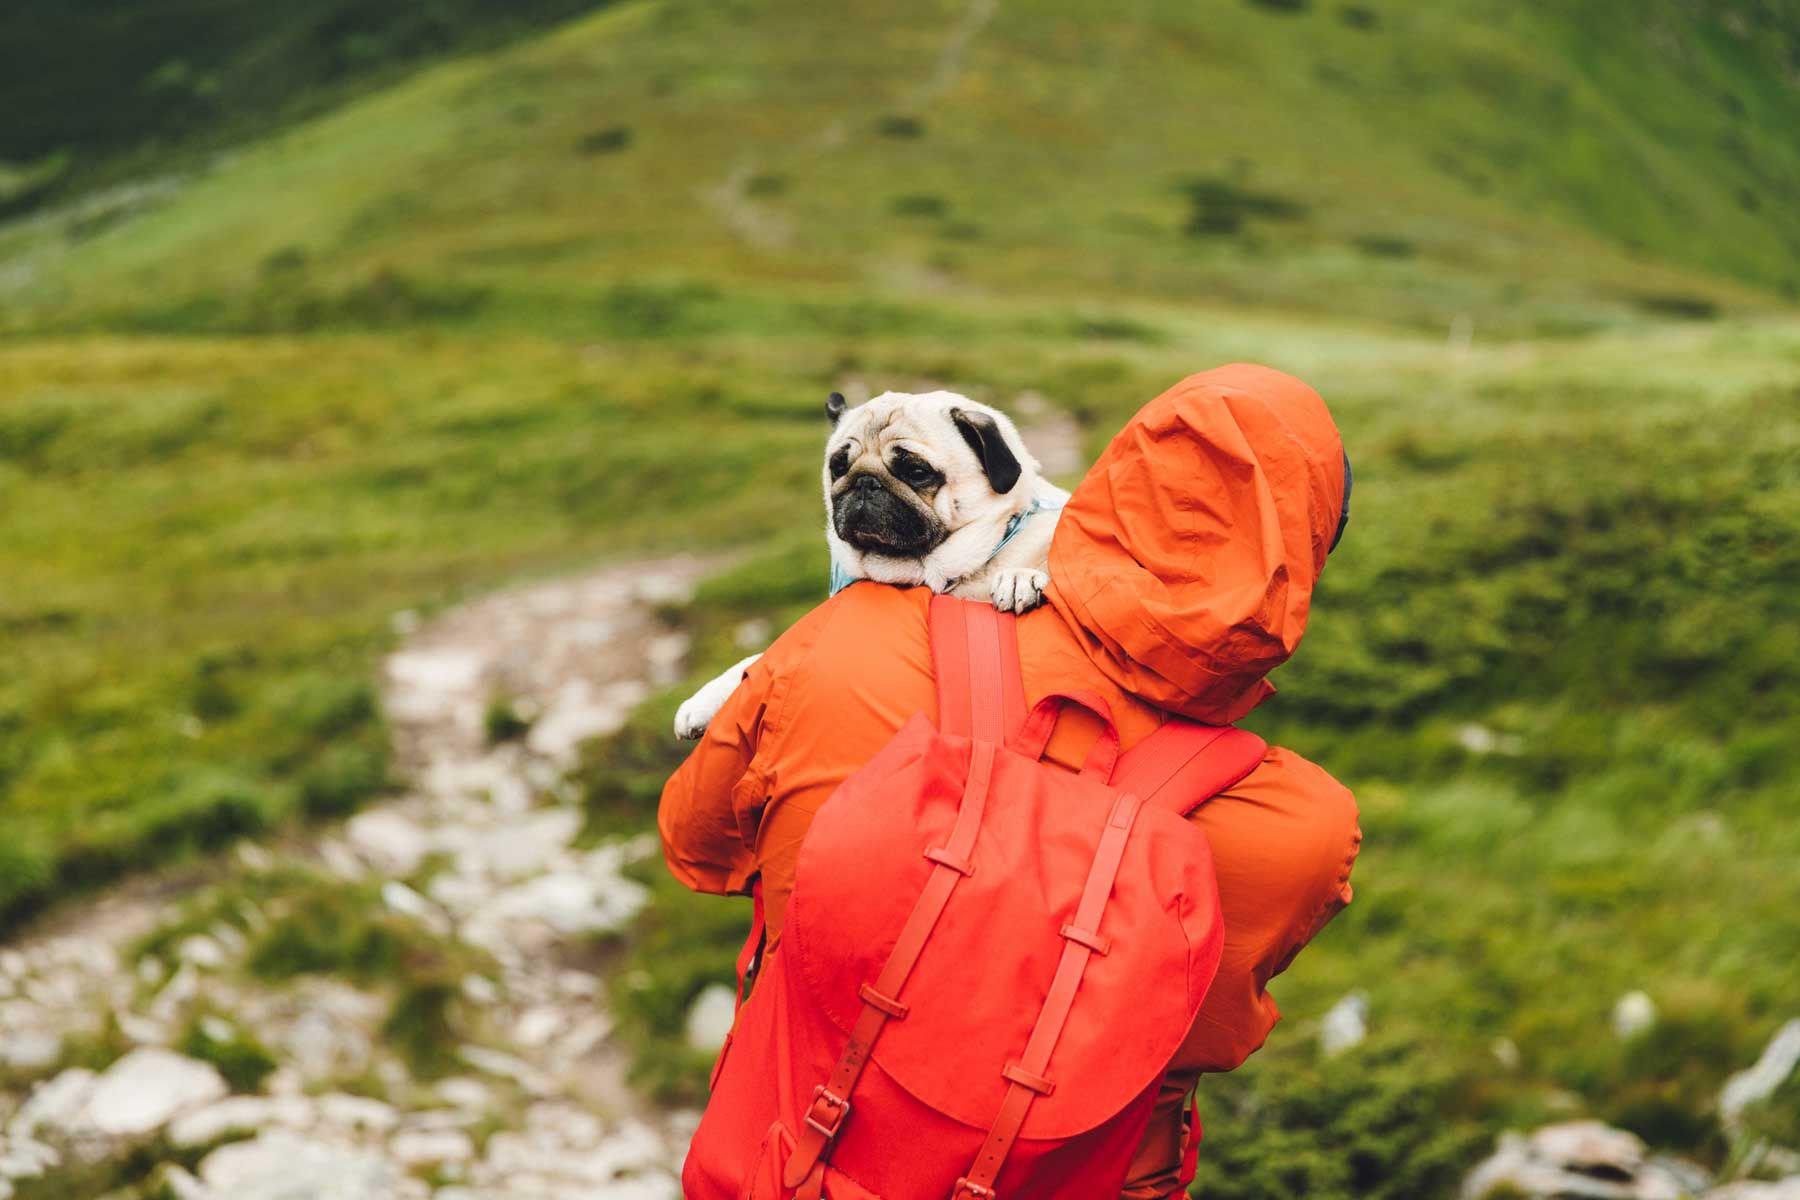 کوله پشتی که سگ در دست دارد و در کوهپیمایی پیاده روی می کند